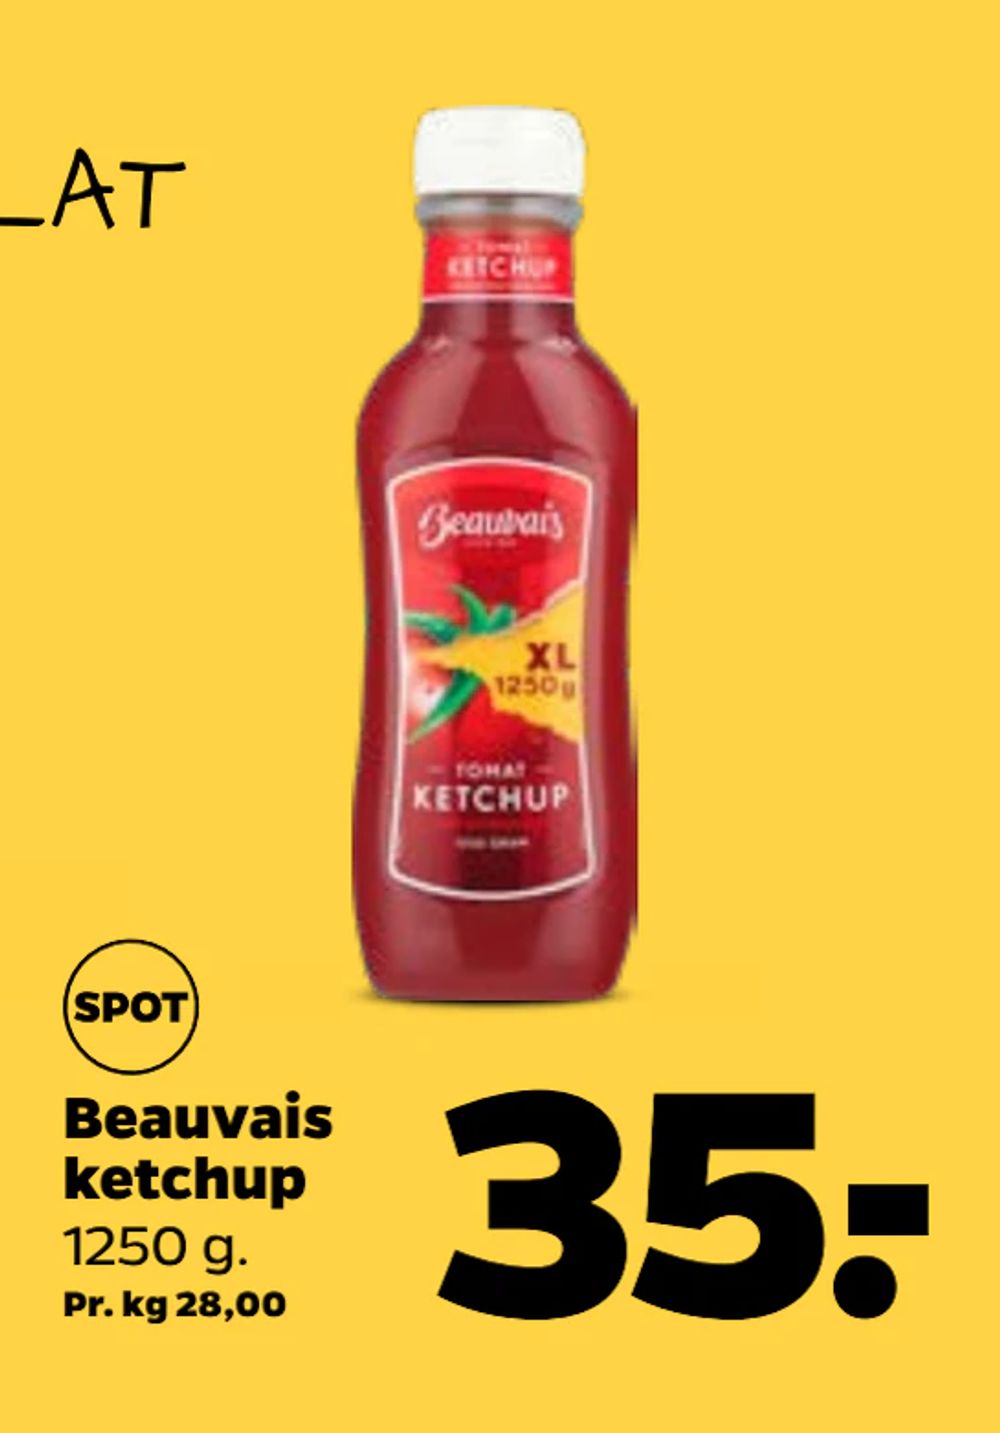 Tilbud på Beauvais ketchup fra Netto til 35 kr.